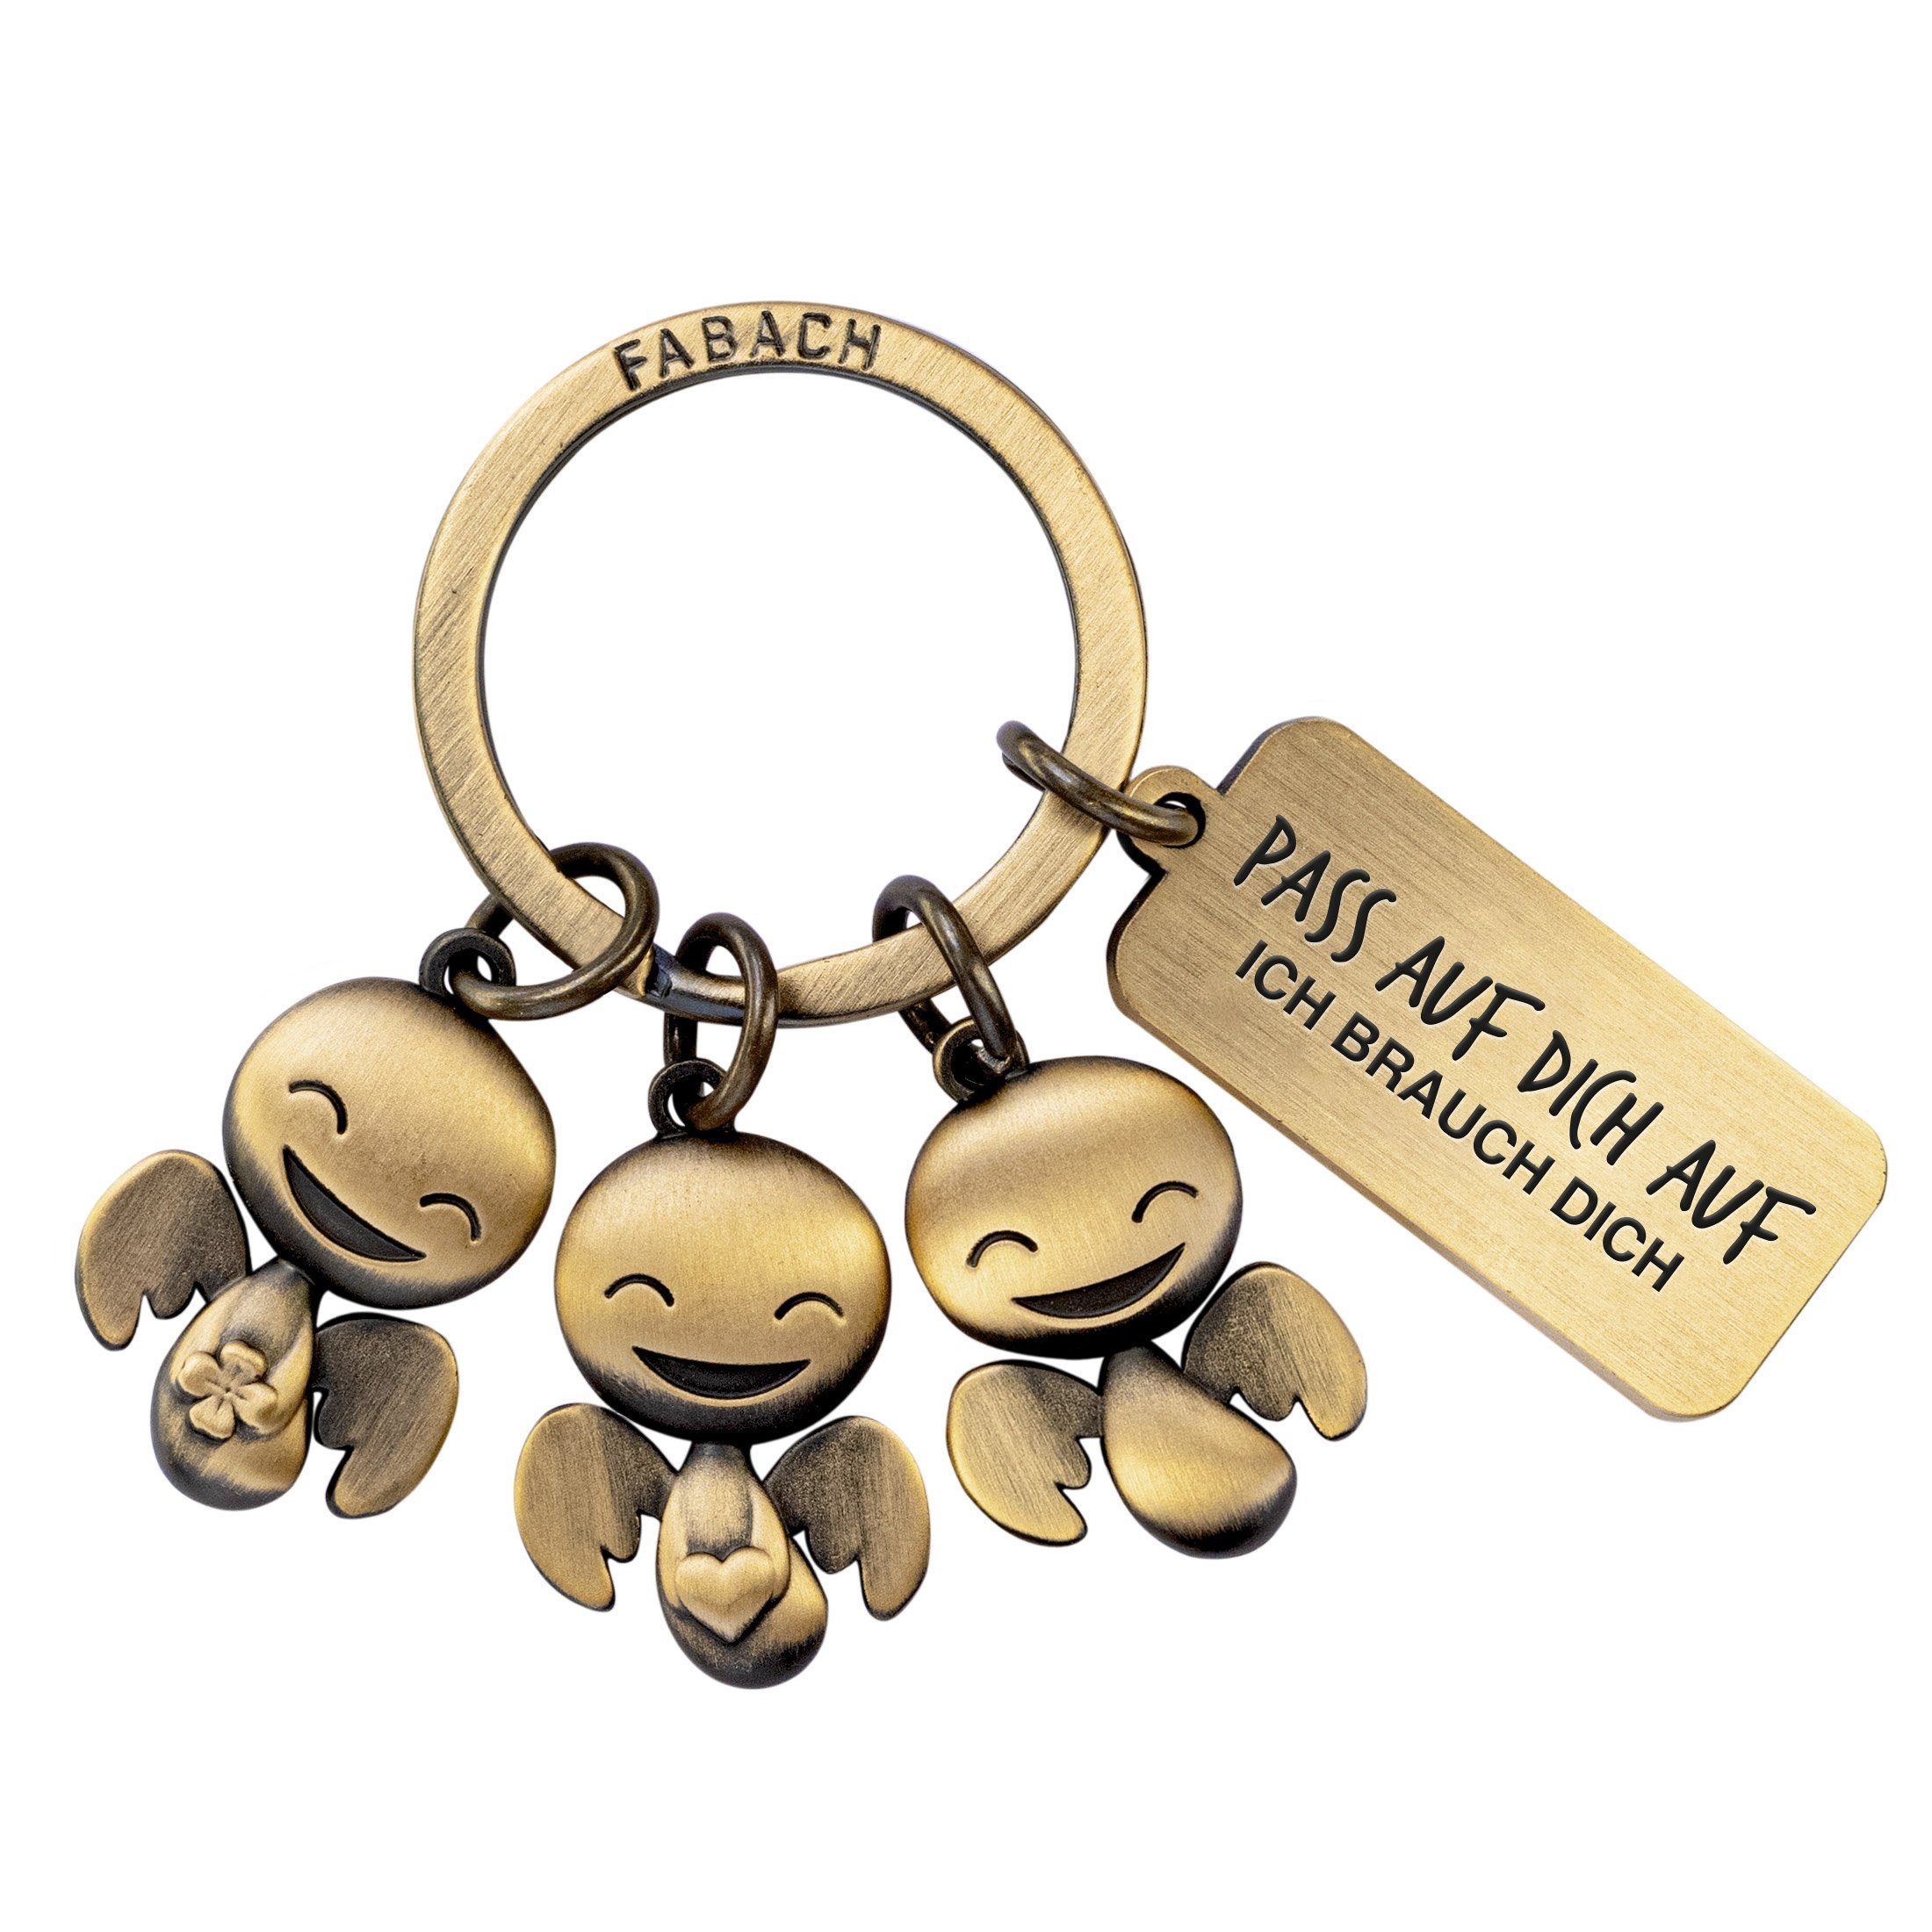 FABACH Schlüsselanhänger Happy-Trio mit Gravur - Pass auf dich auf - Schutzengel Glücksbringer Antique Bronze